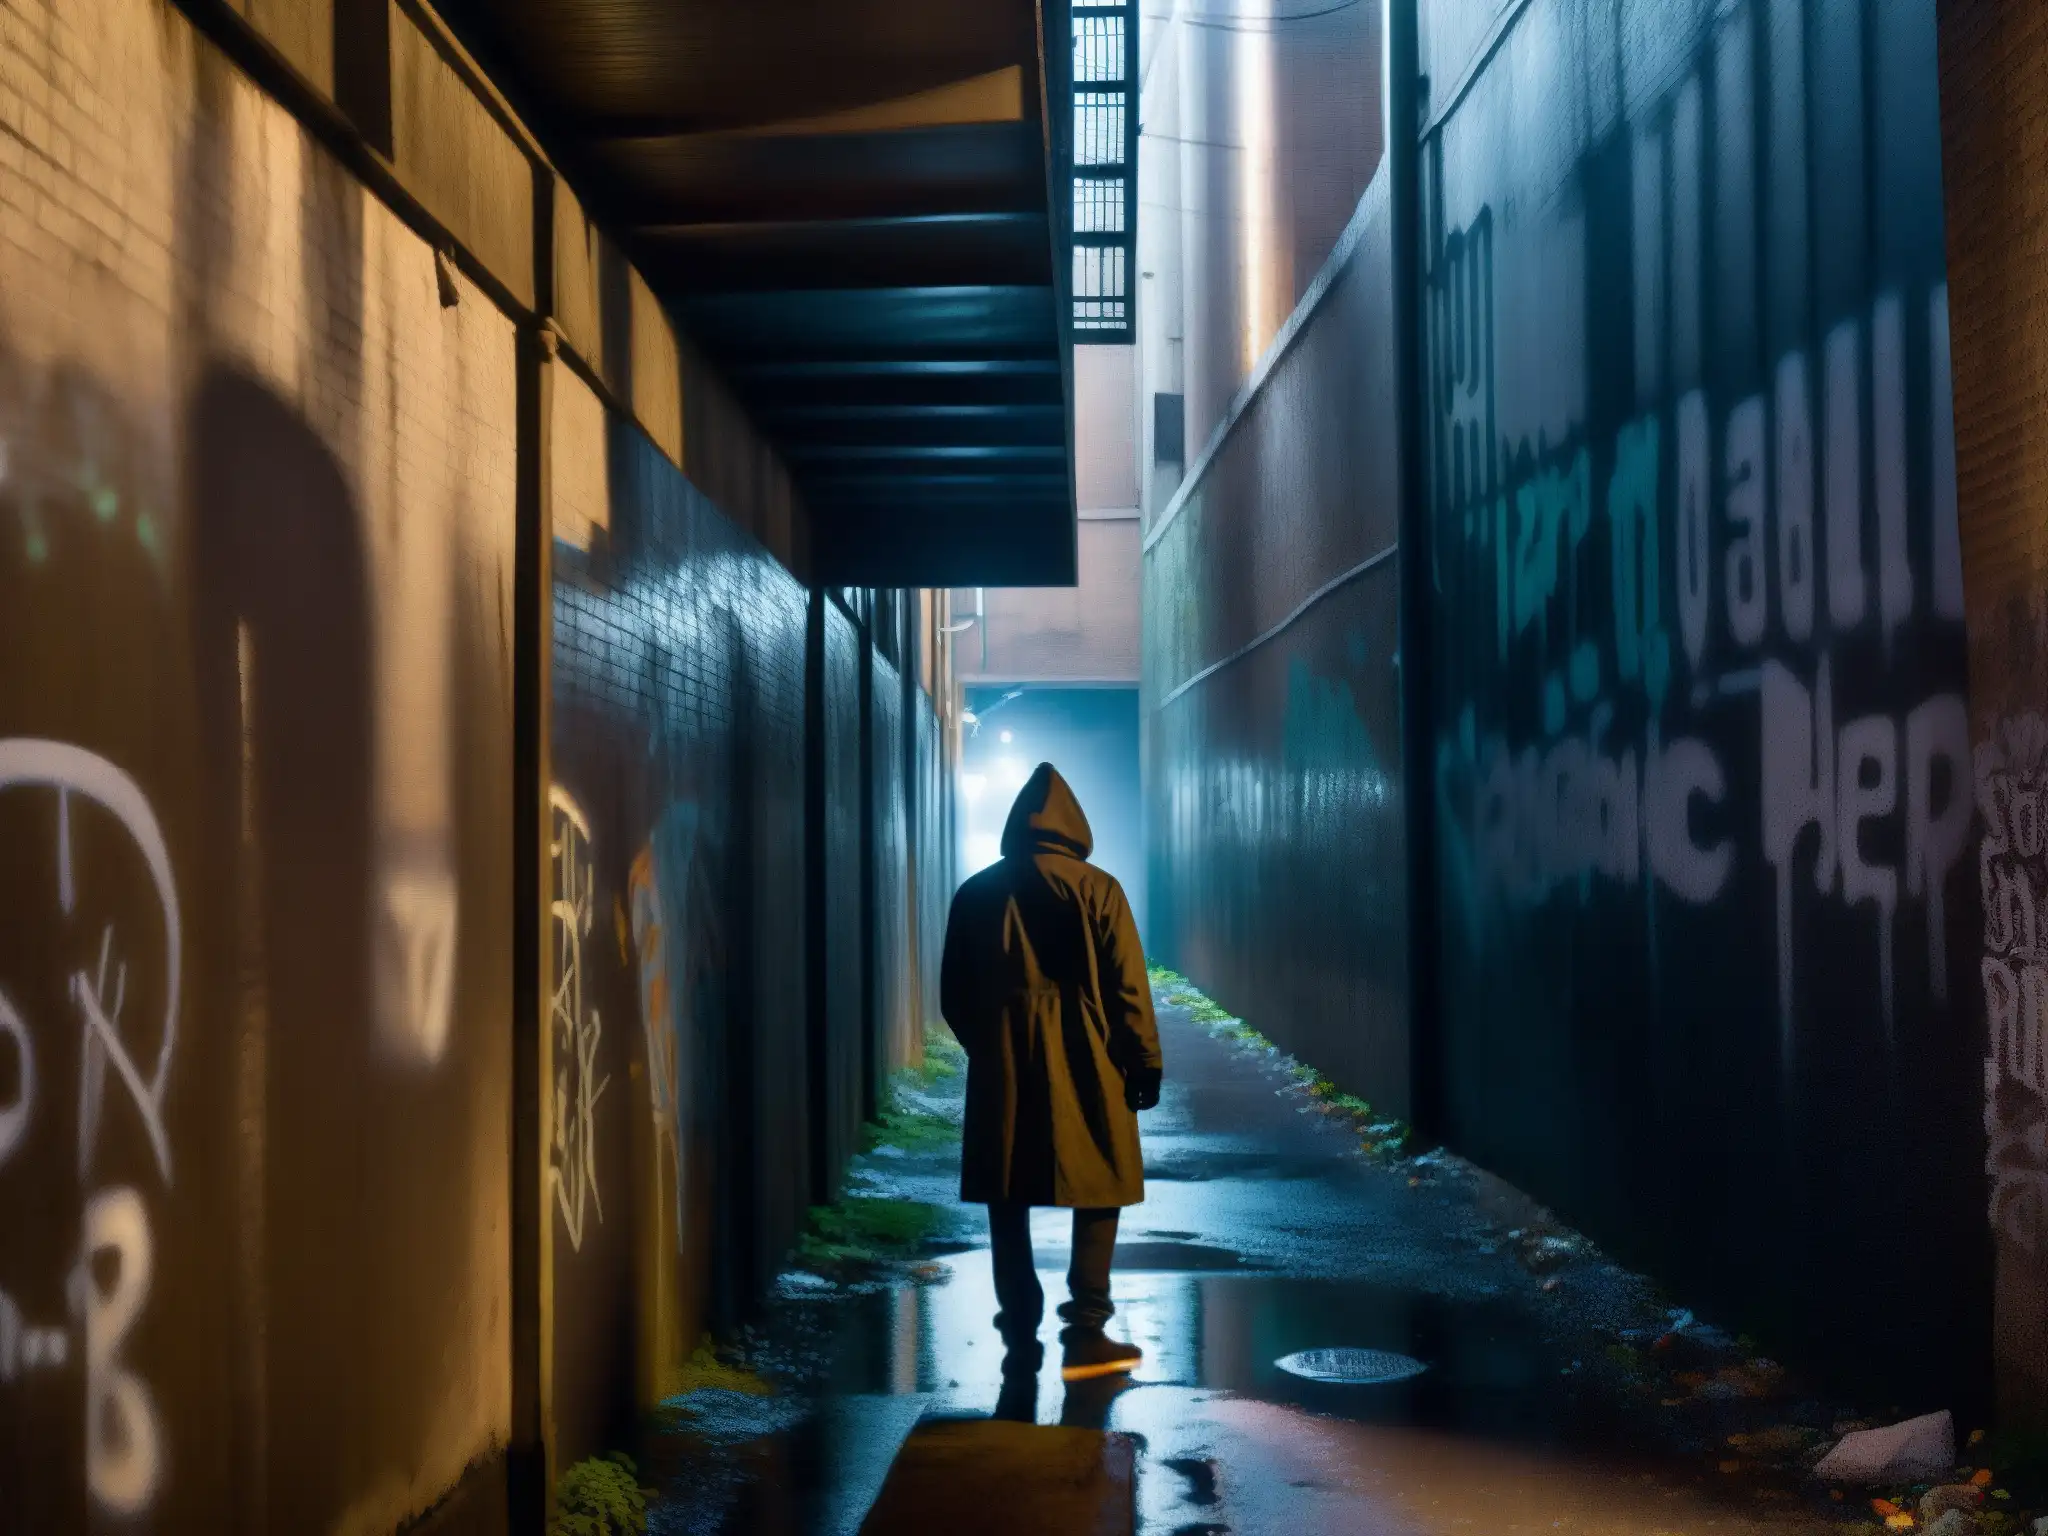 En la oscuridad de un callejón urbano, una figura solitaria se destaca entre las paredes cubiertas de grafitis